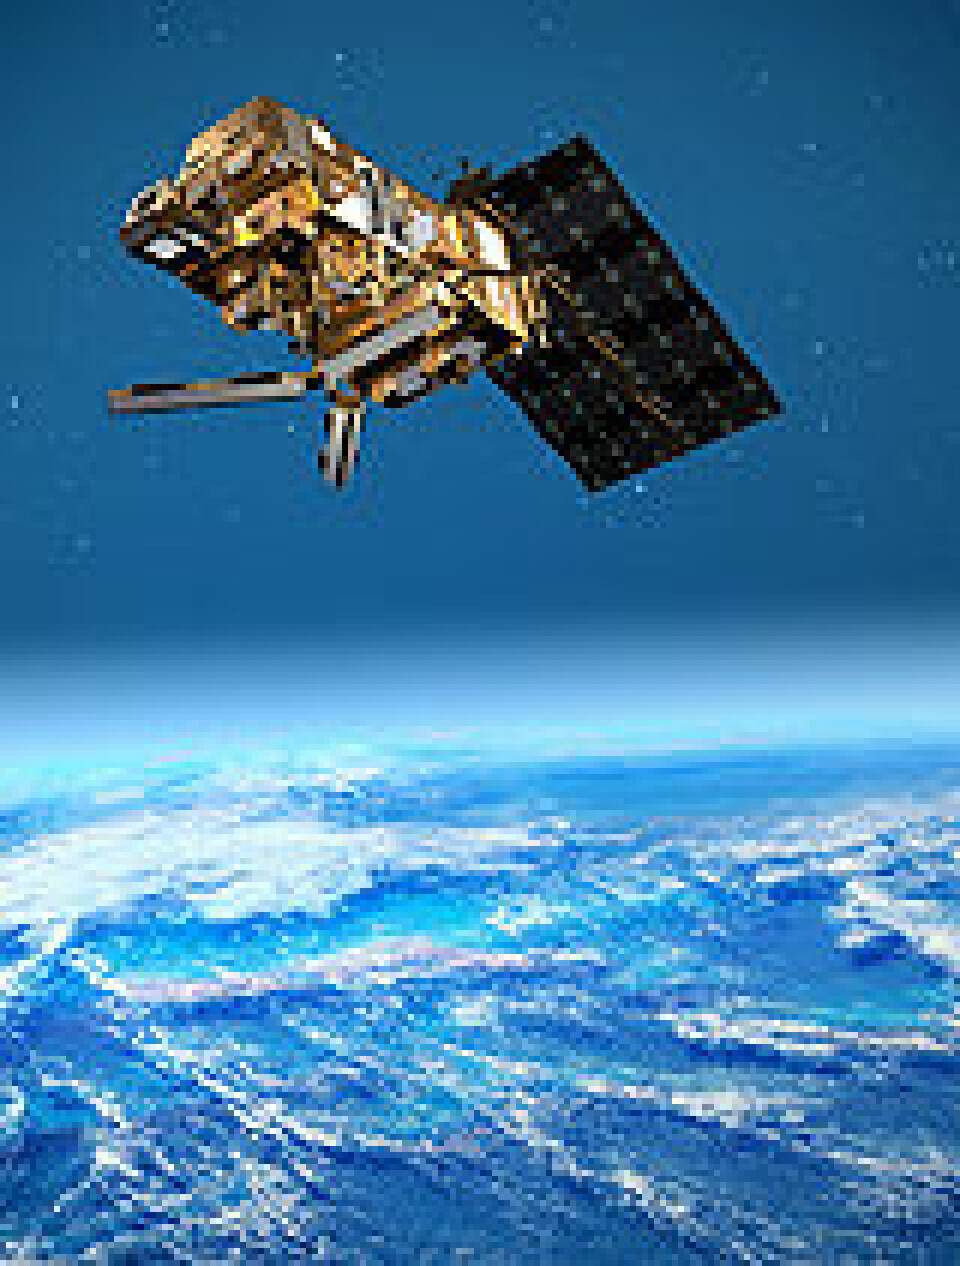 'Mister vi satellittene våre, mister vi også flytrafikken, skipsfarten, finansindustrien - og hvem vet hva annet. (Bilde: ESA)'